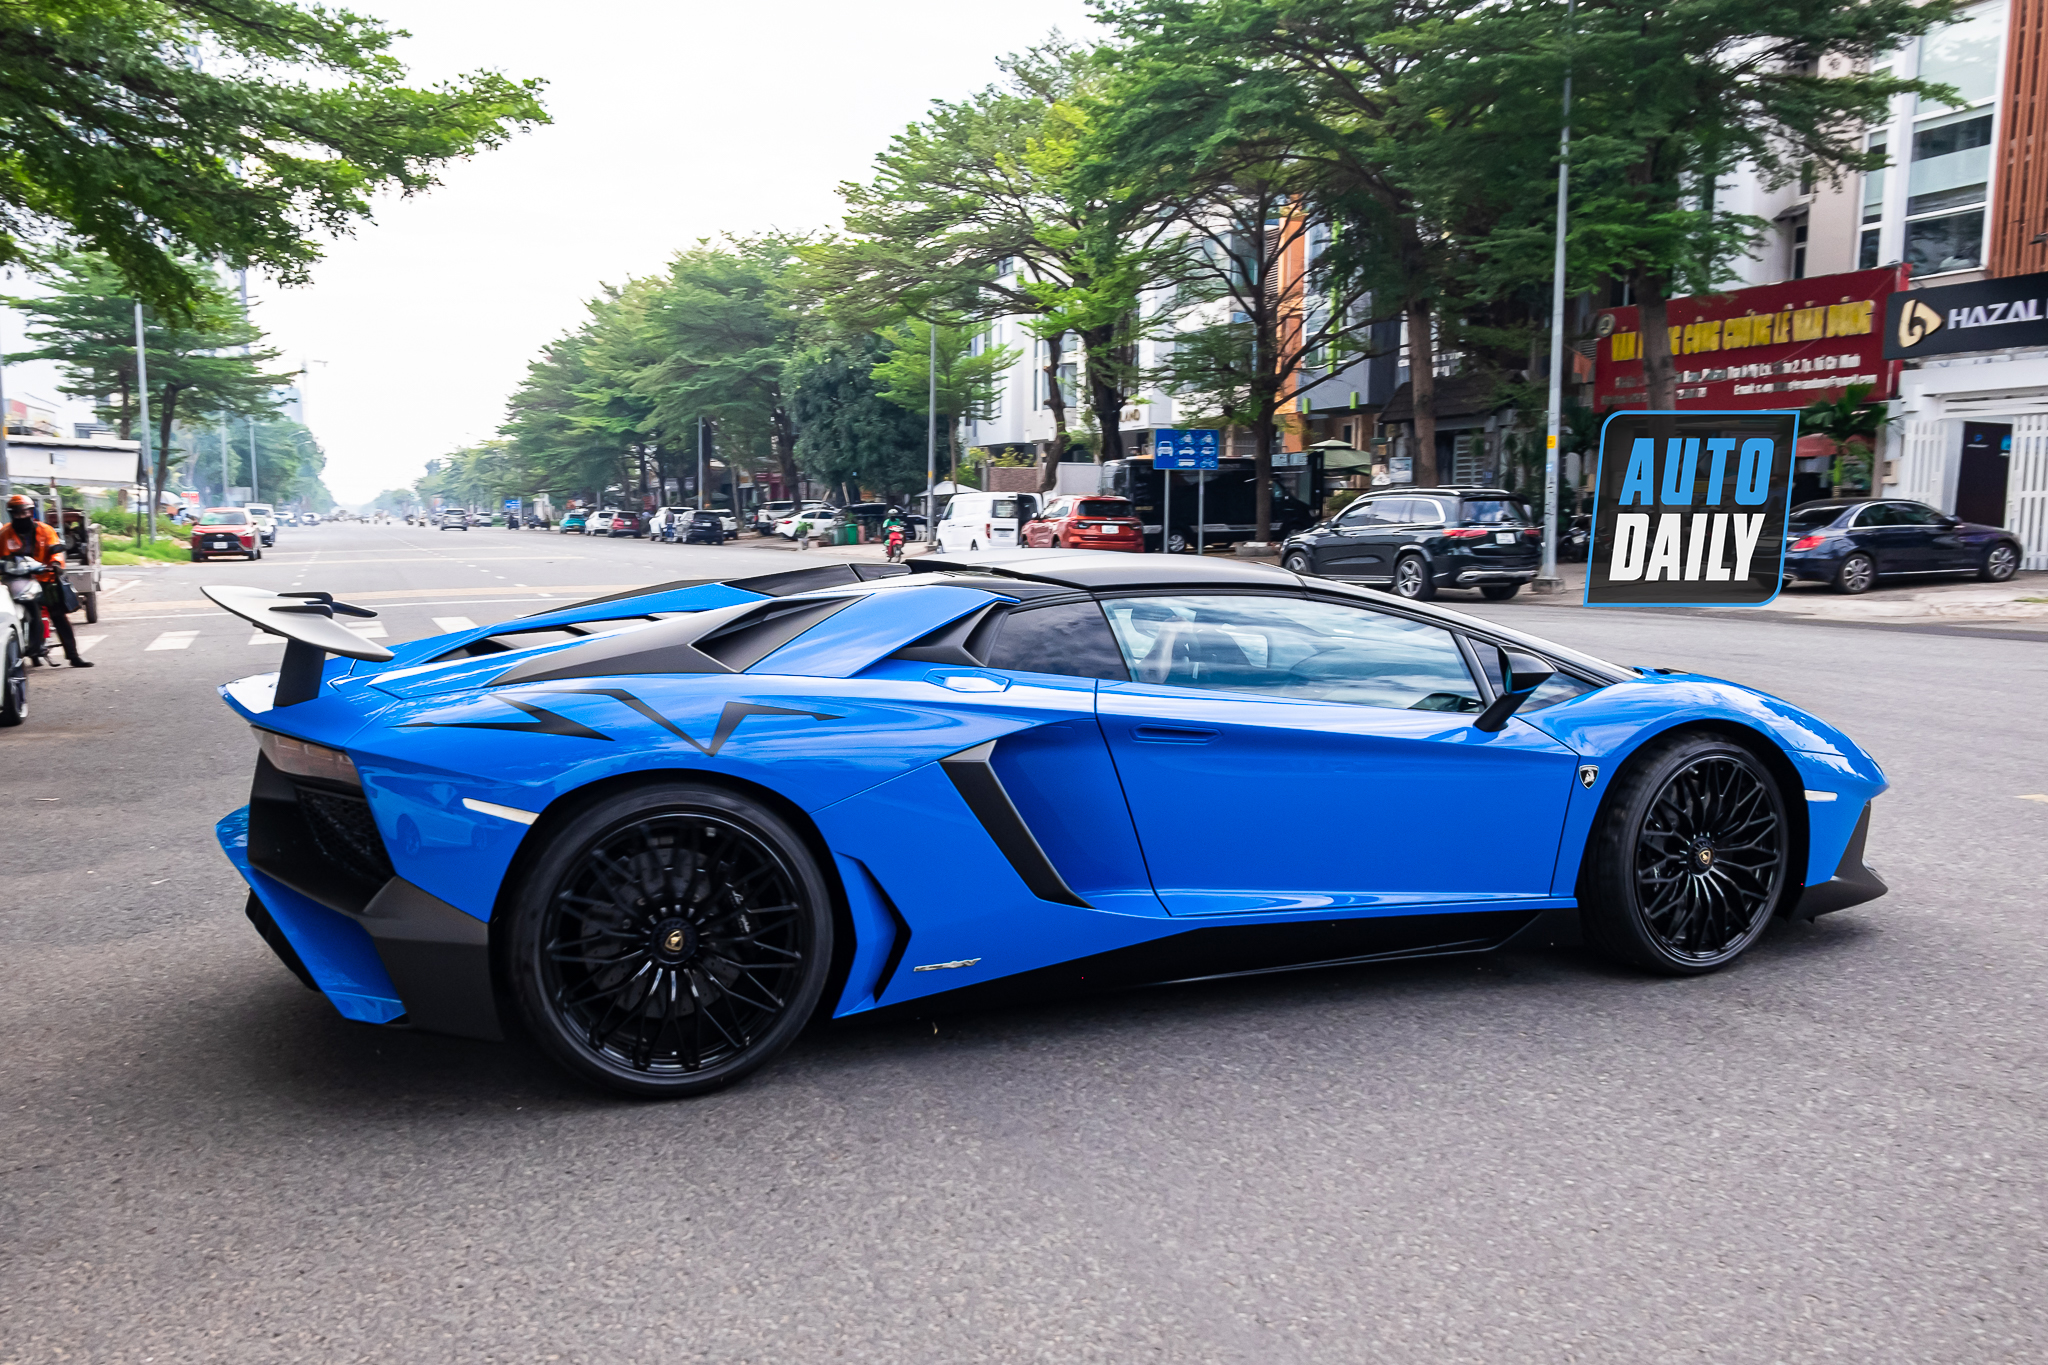 Bắt gặp Lamborghini Aventador SV Roadster màu xanh độc nhất Việt Nam aventador-sv-roadster-xanh-autodaily-6.JPG